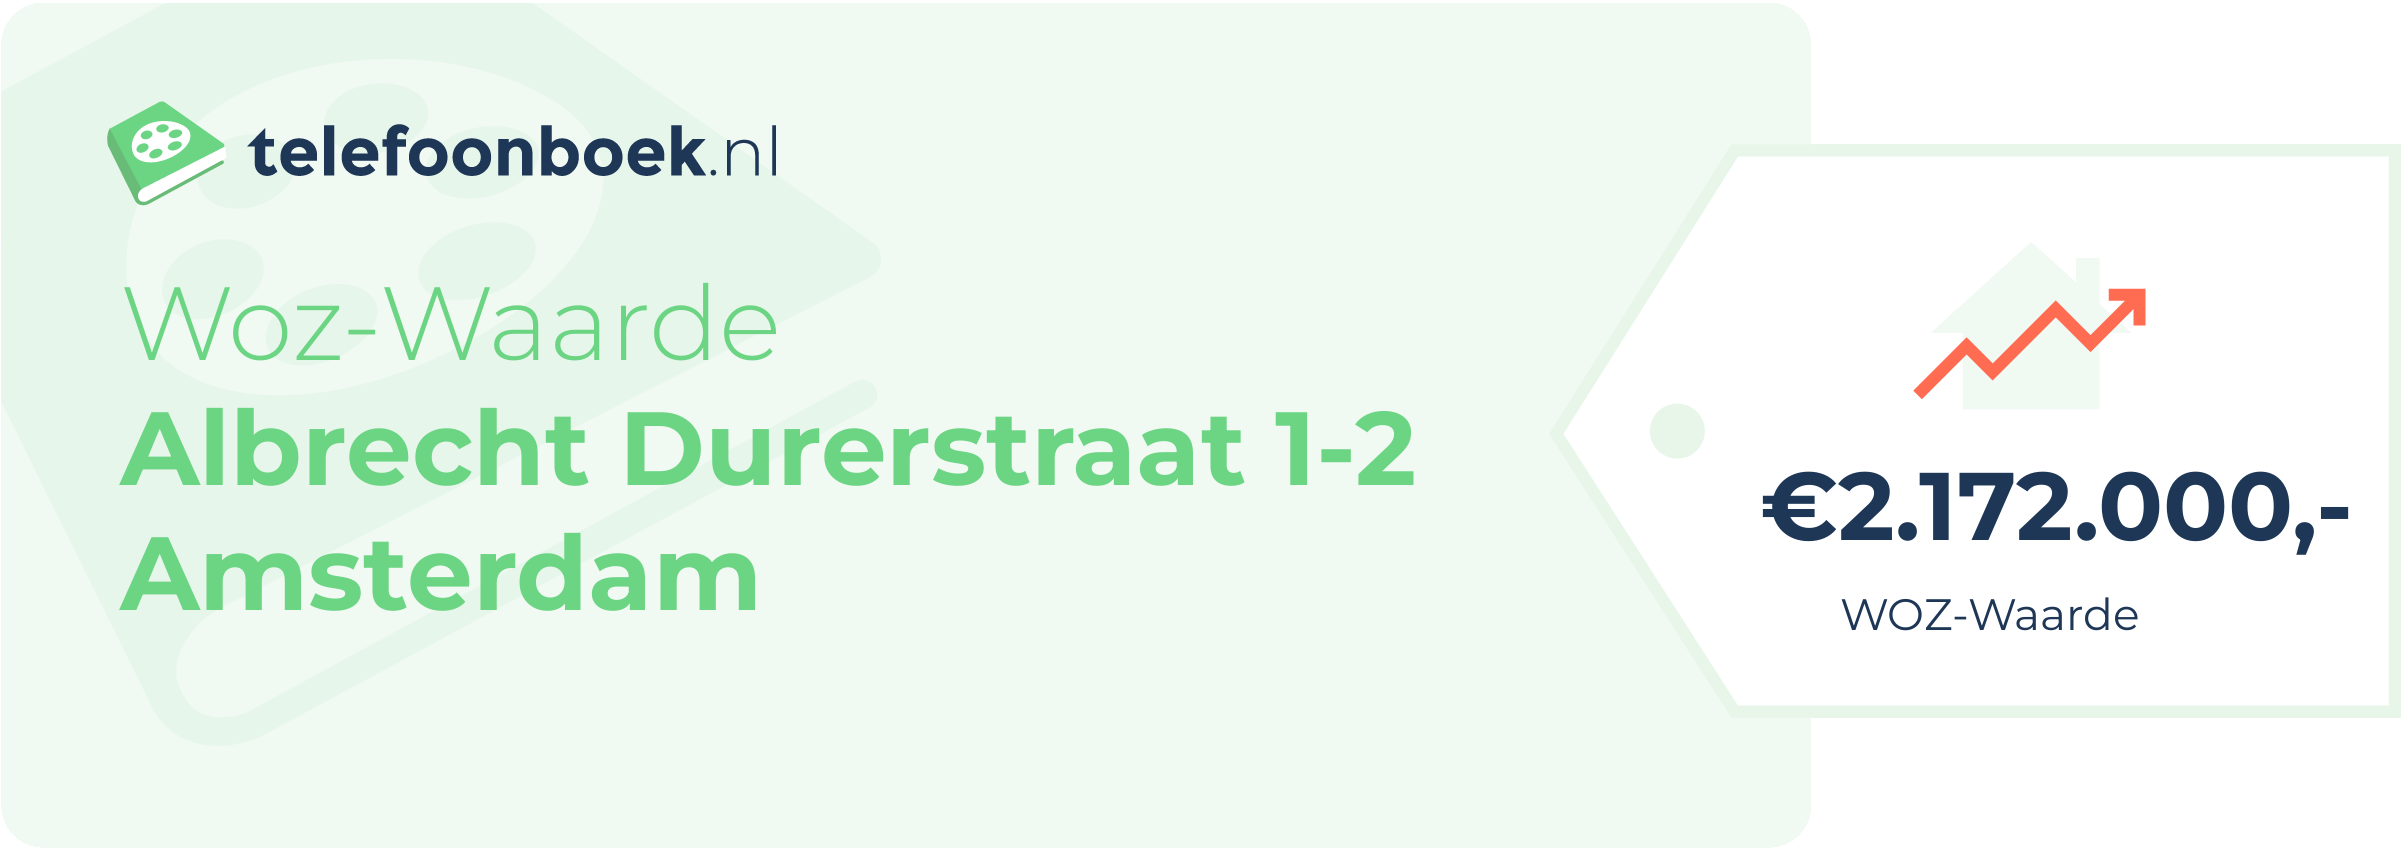 WOZ-waarde Albrecht Durerstraat 1-2 Amsterdam